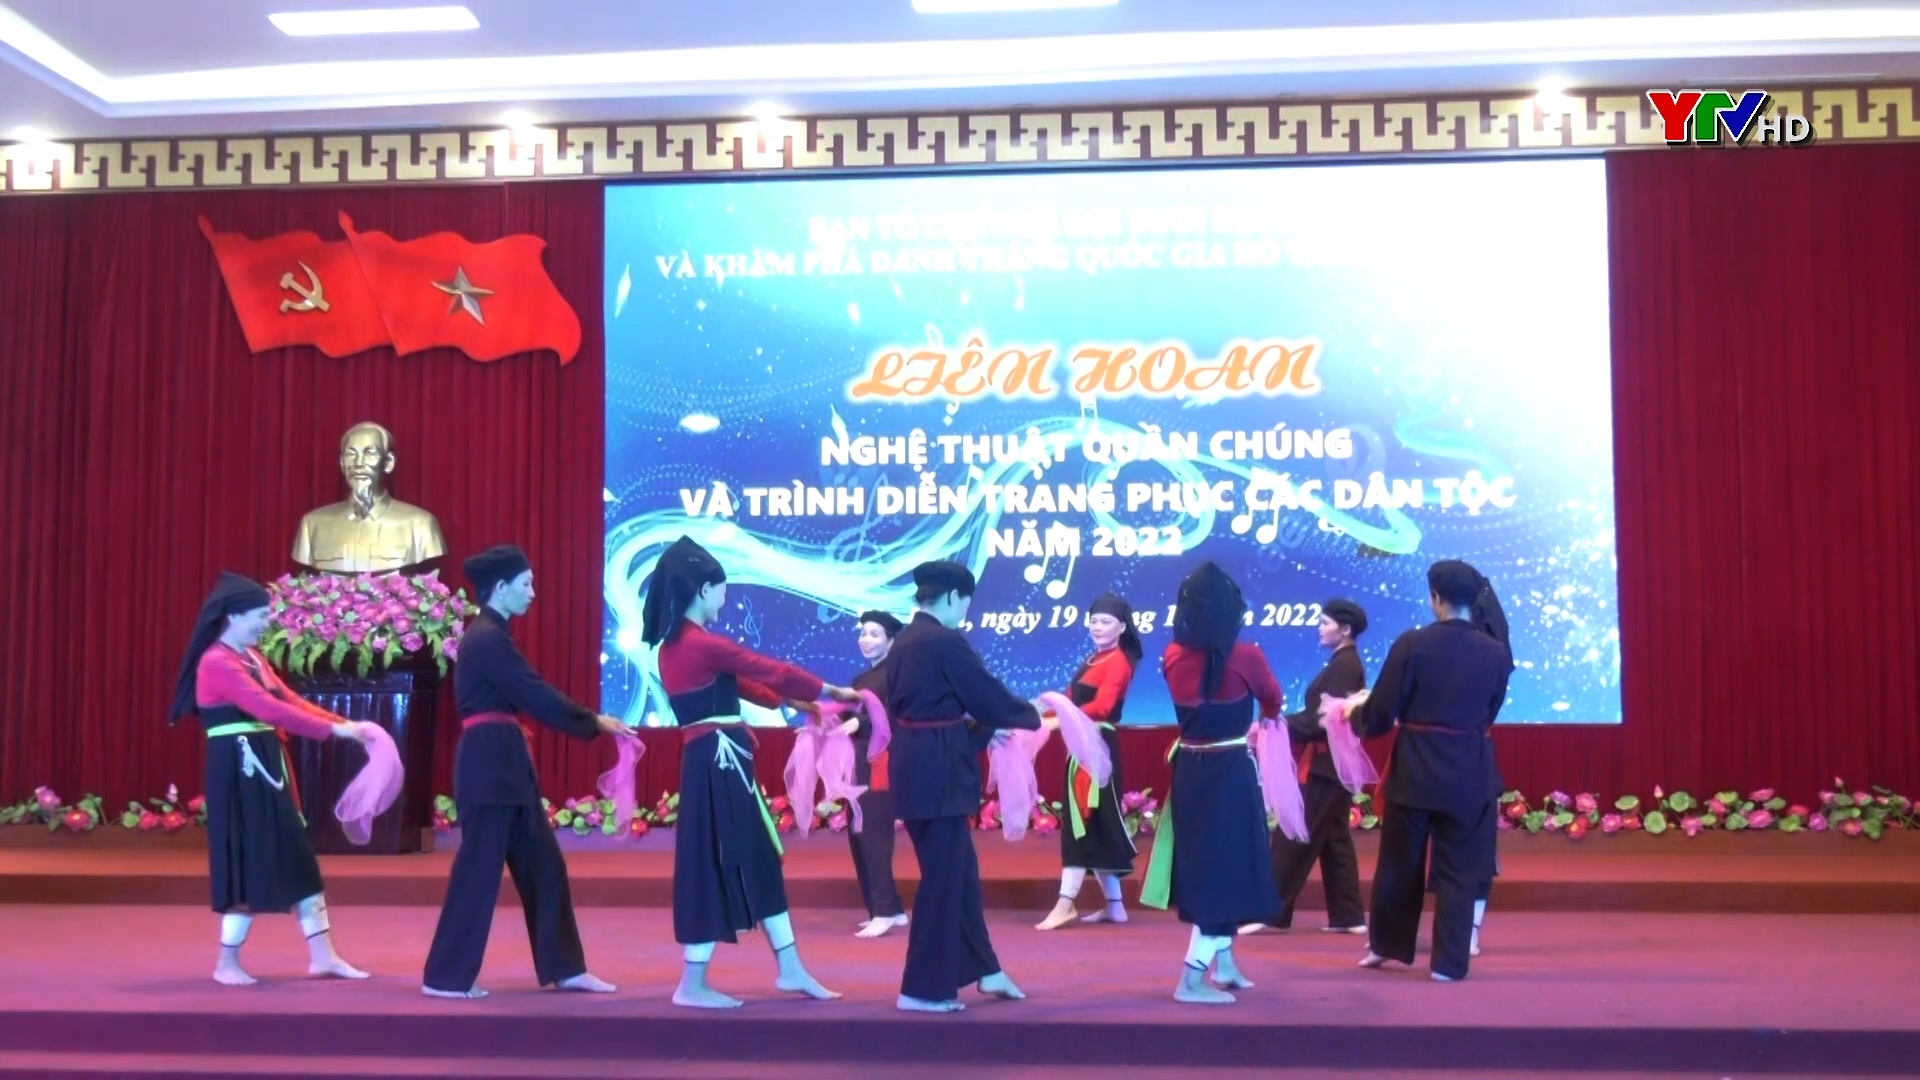 Liên hoan Nghệ thuật quần chúng và trình diễn trang phục các dân tộc huyện Yên Bình năm 2022